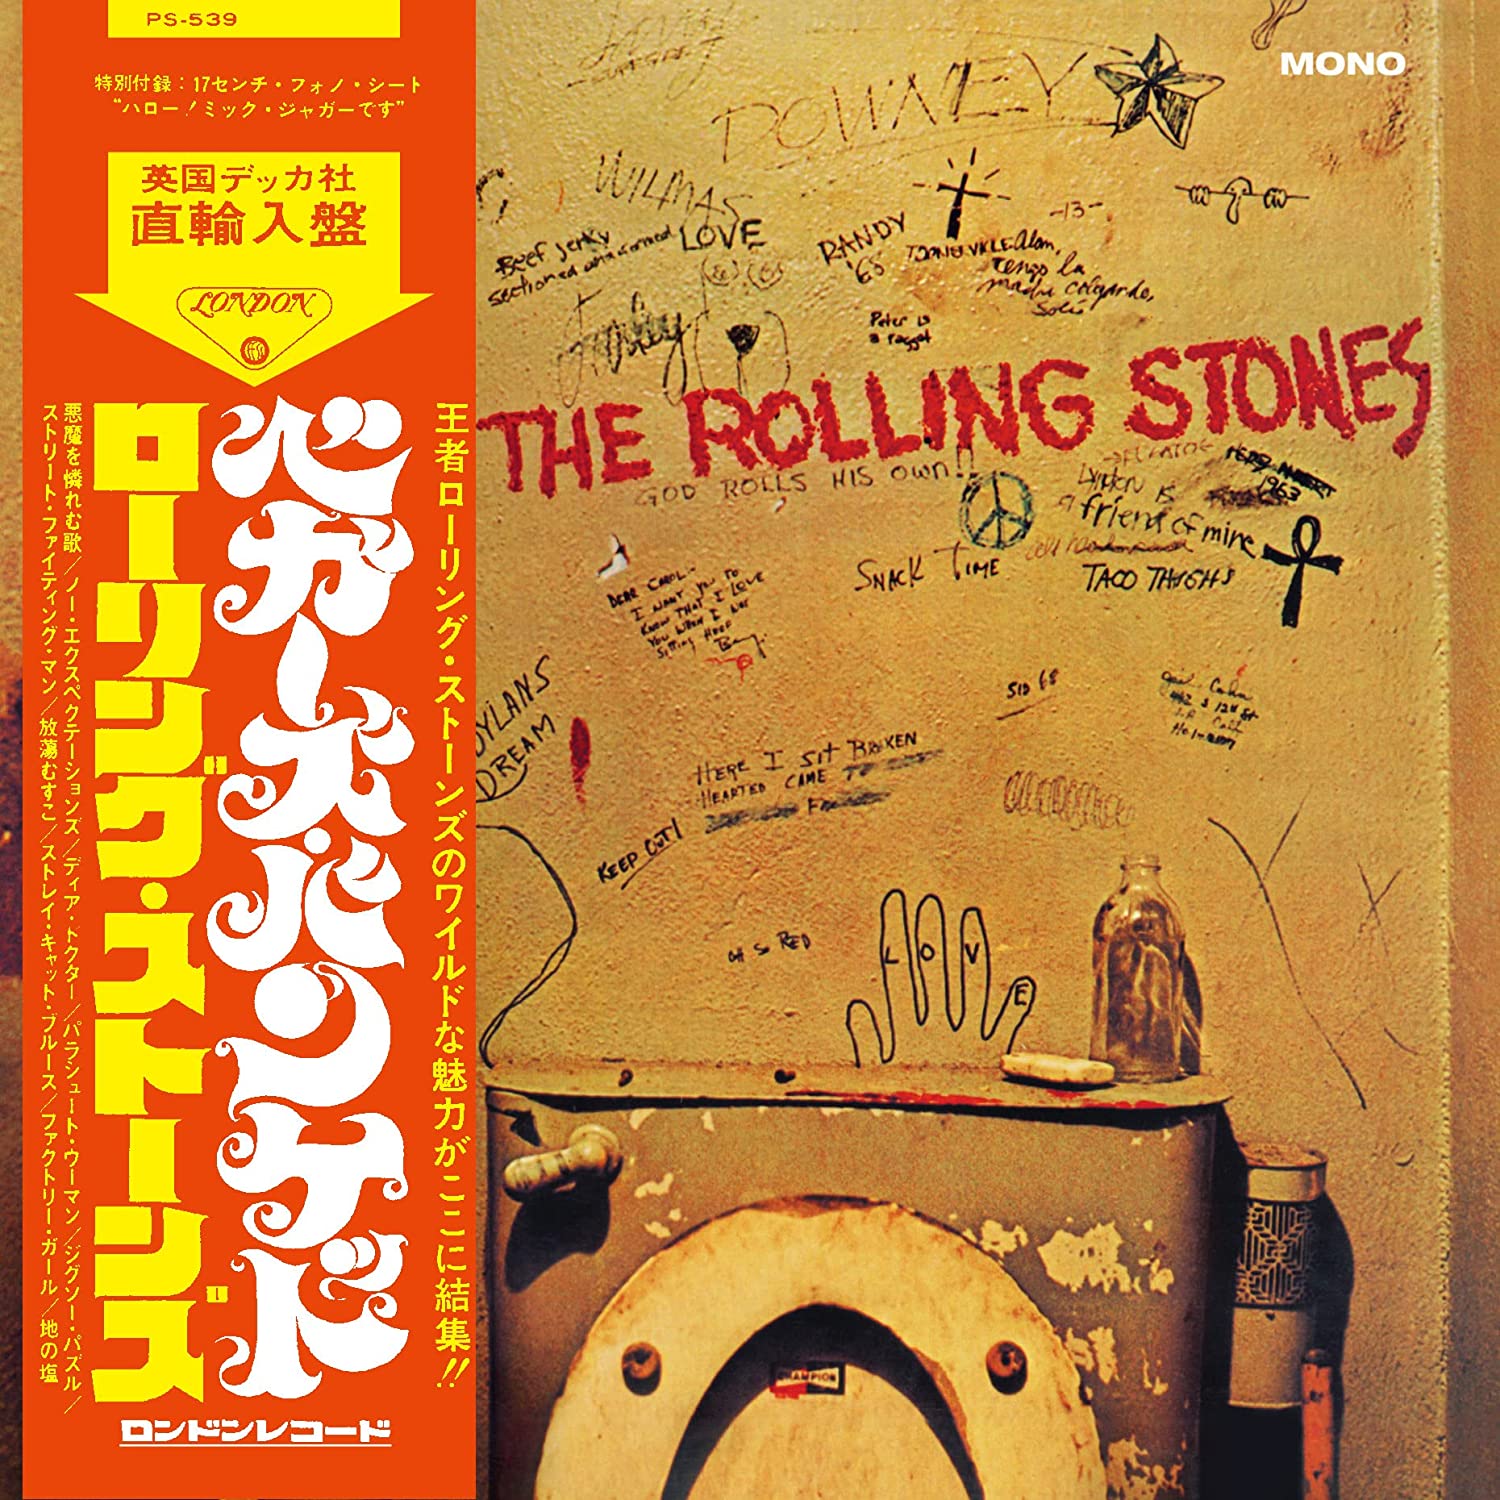 The Rolling Stones Beggar's Banquet SHM CD [Mono][Importado]